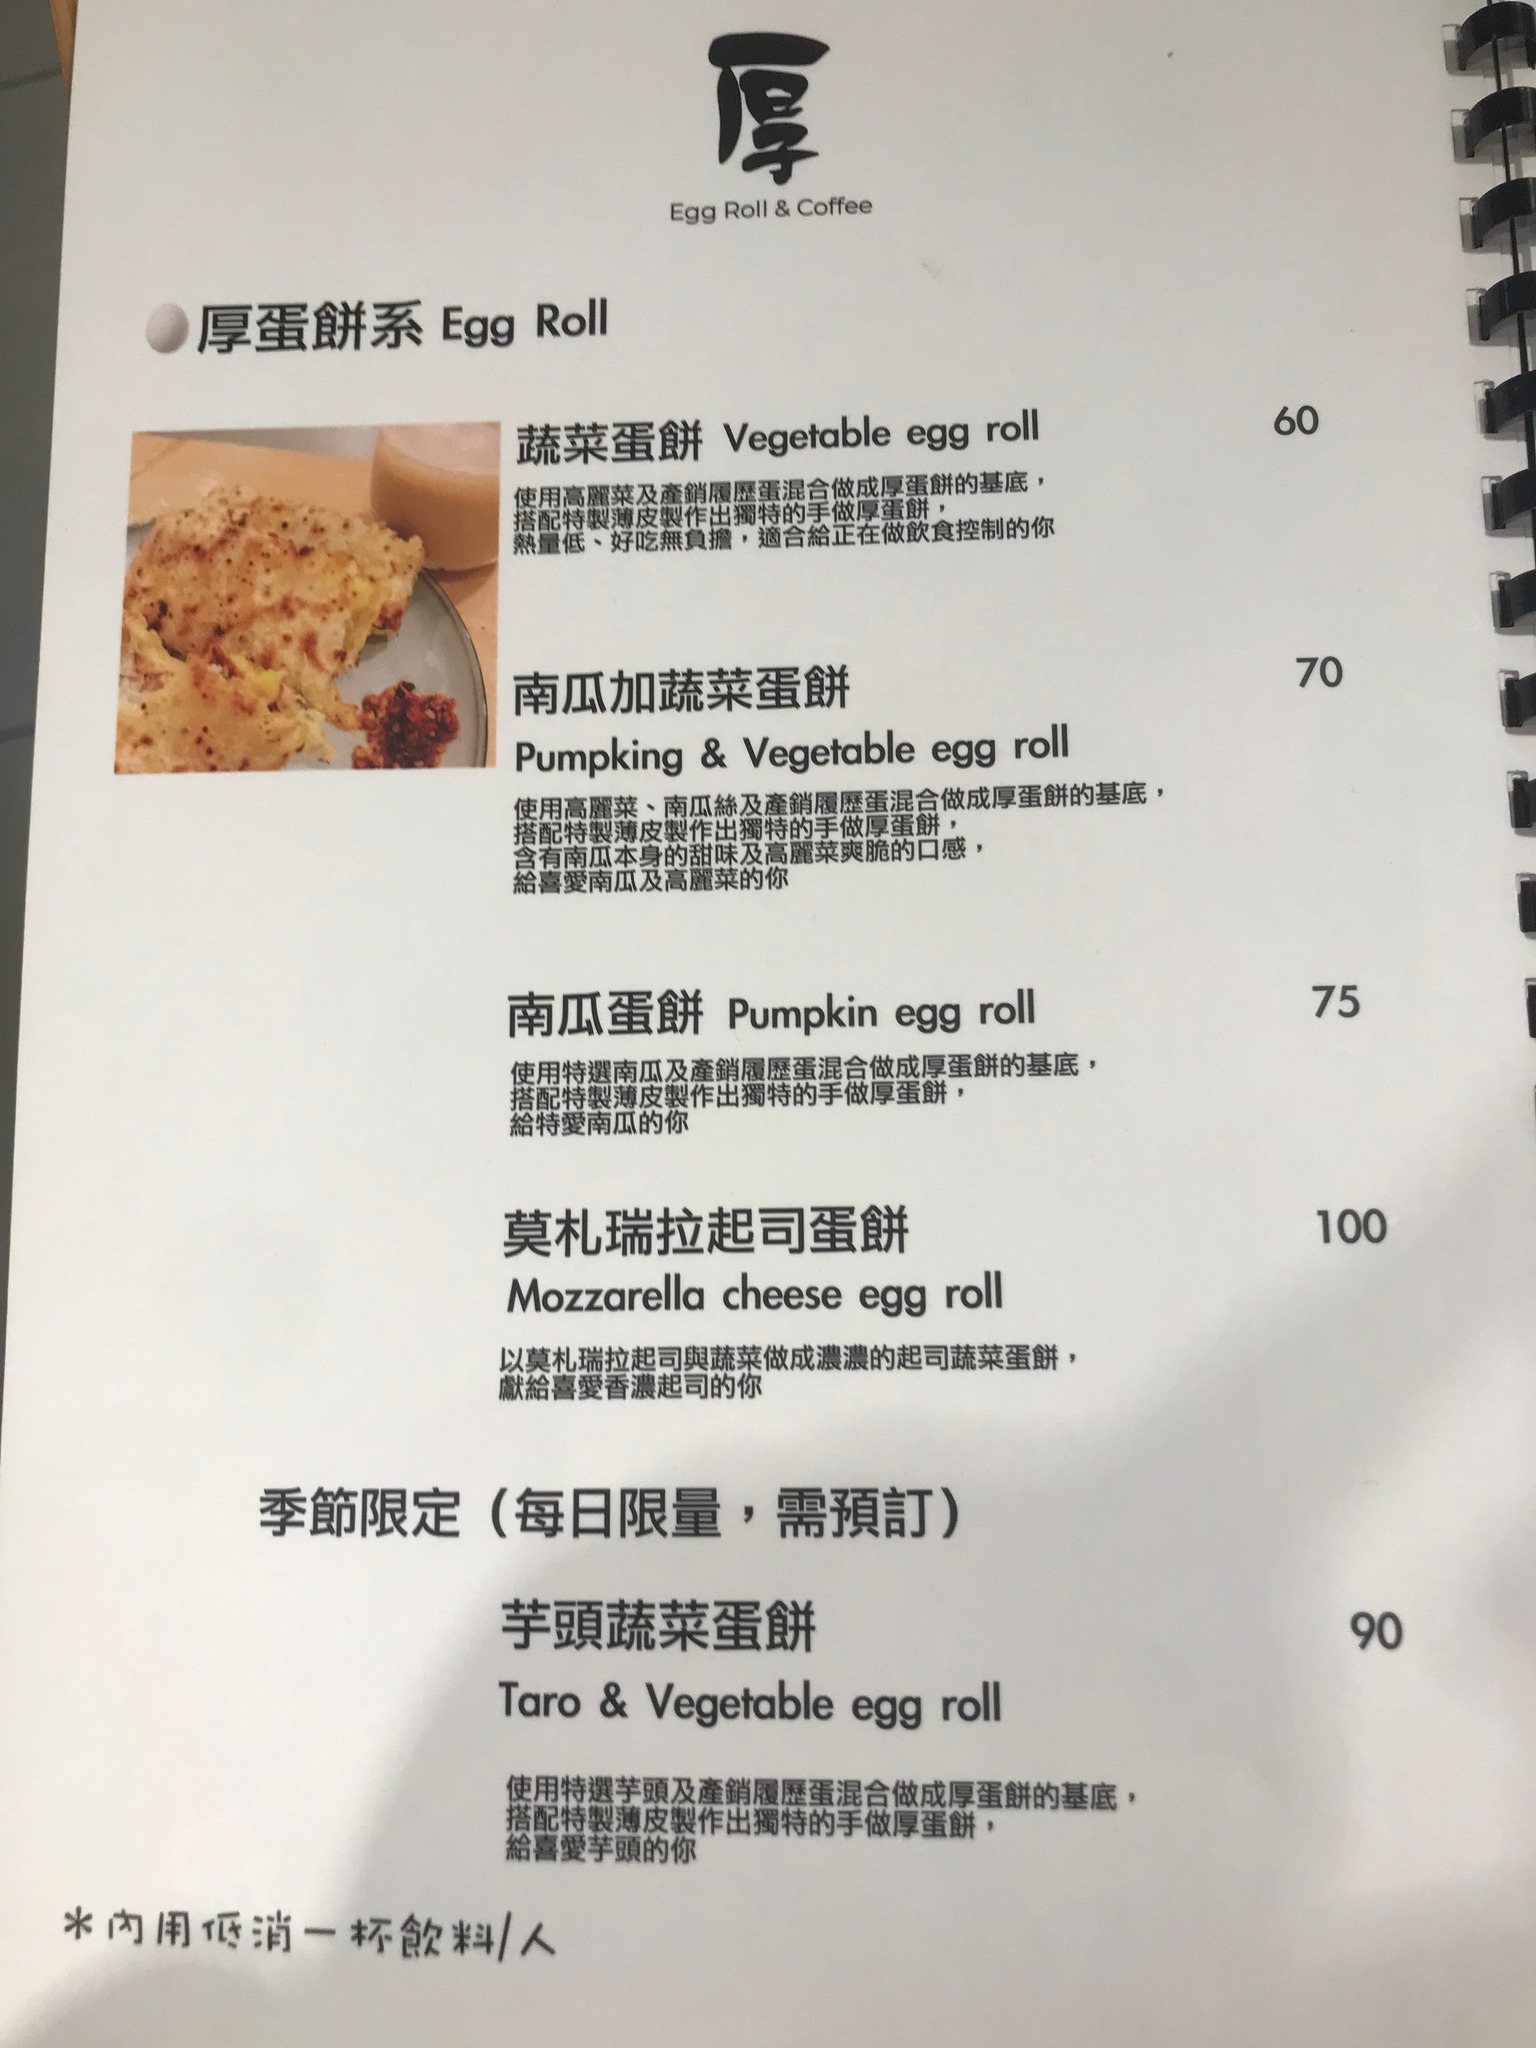 厚Eggroll&Coffee菜單MENU